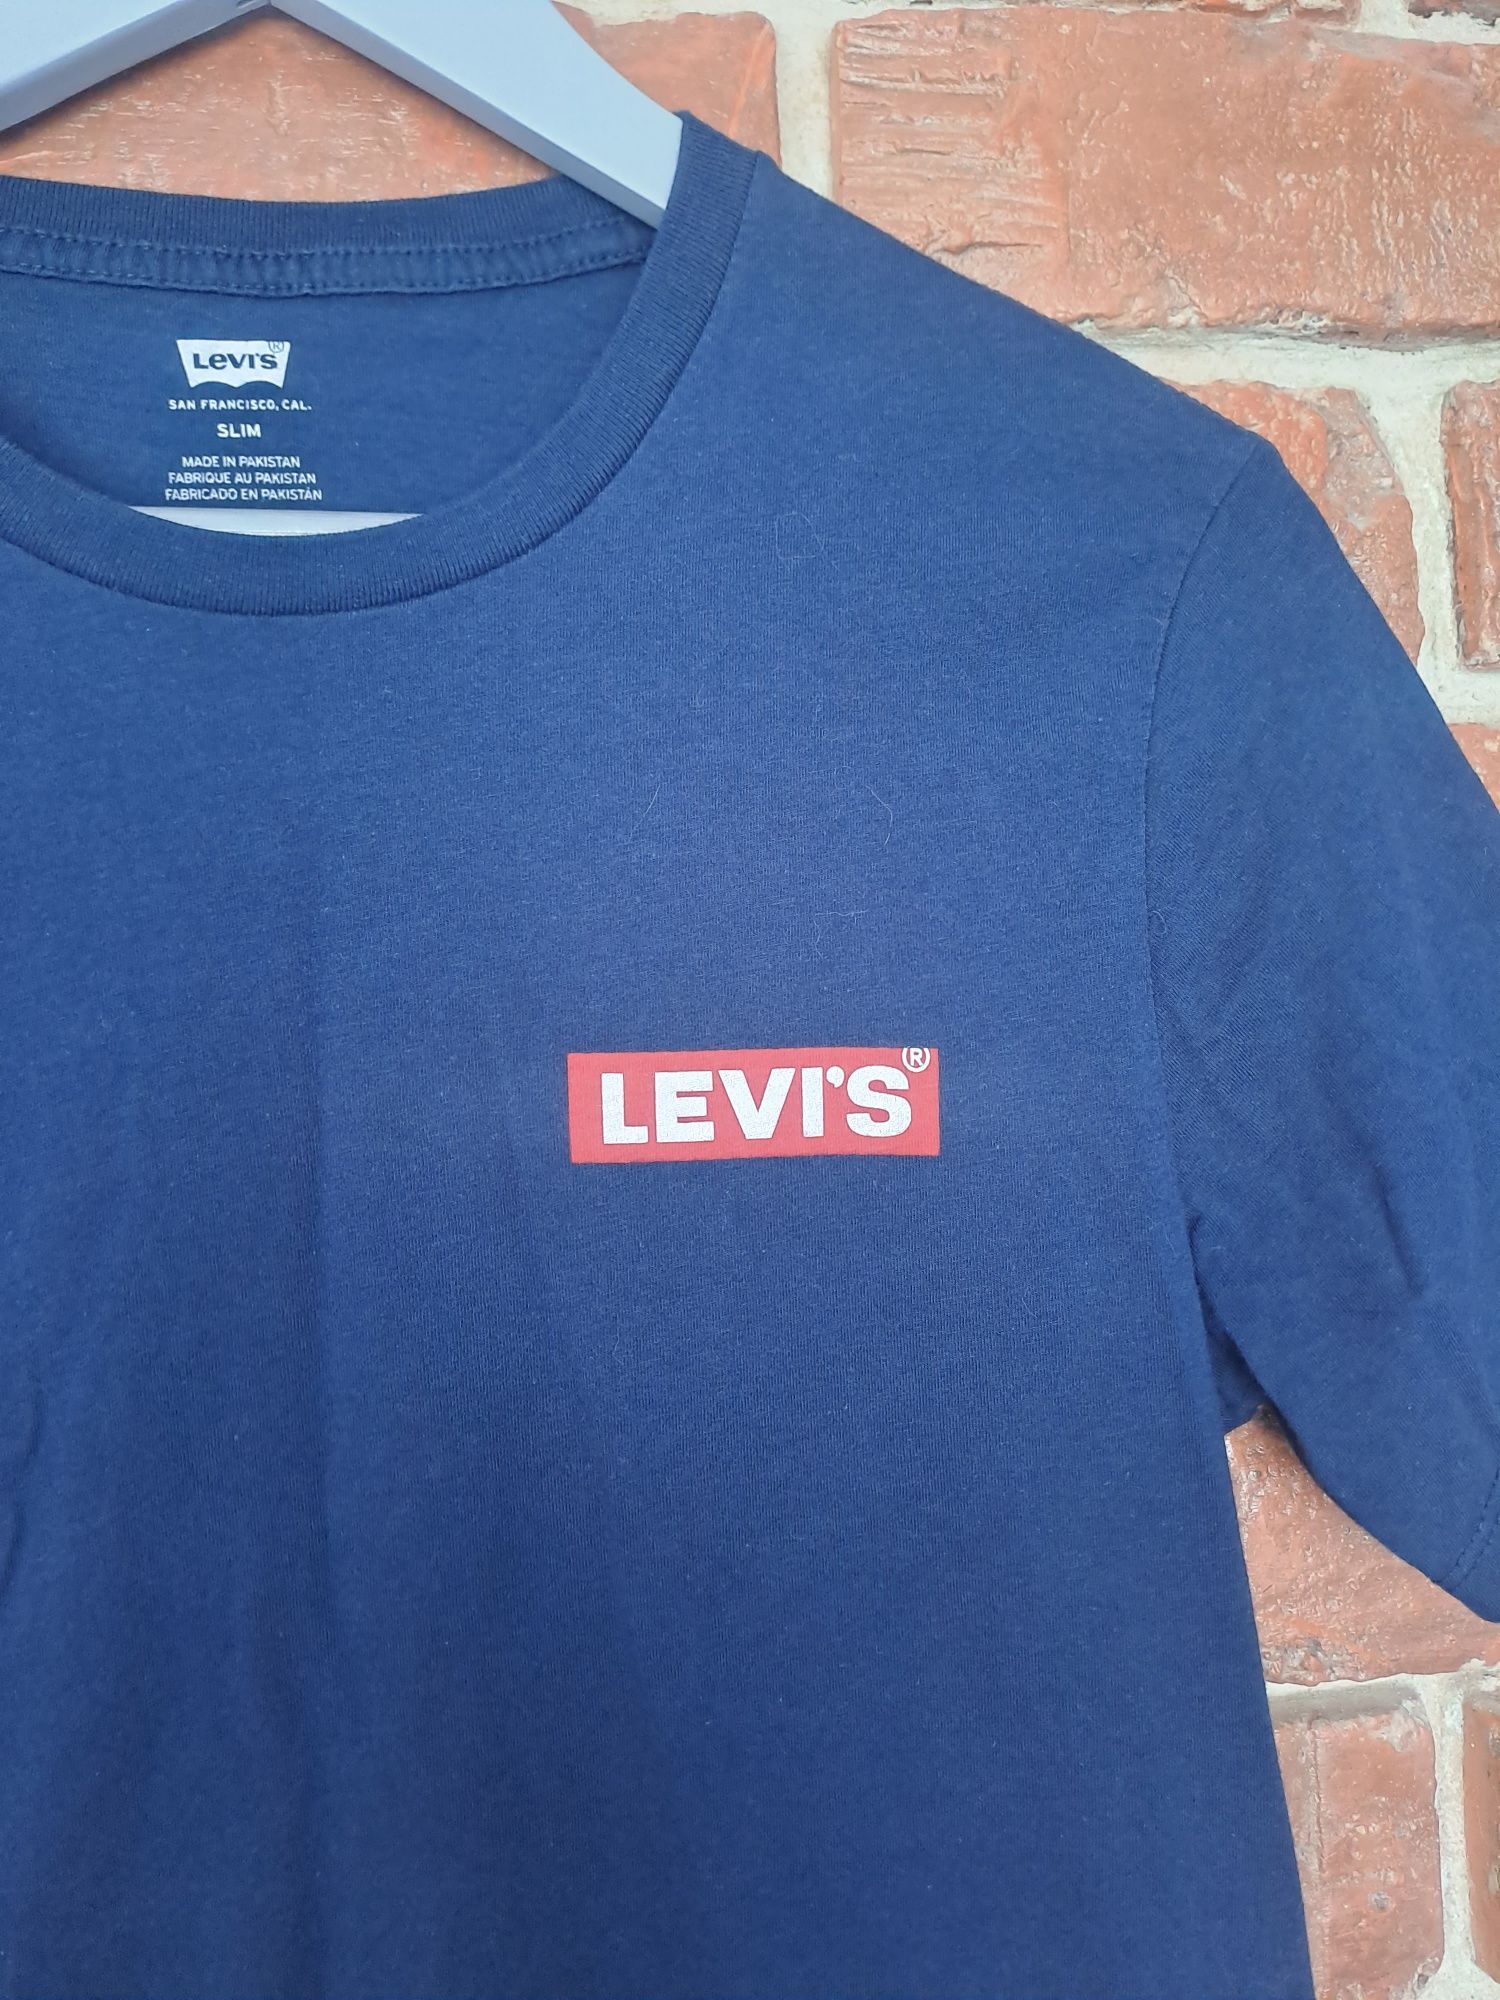 Damska koszulka t-shirt Levi's bawełna r.S slim fit